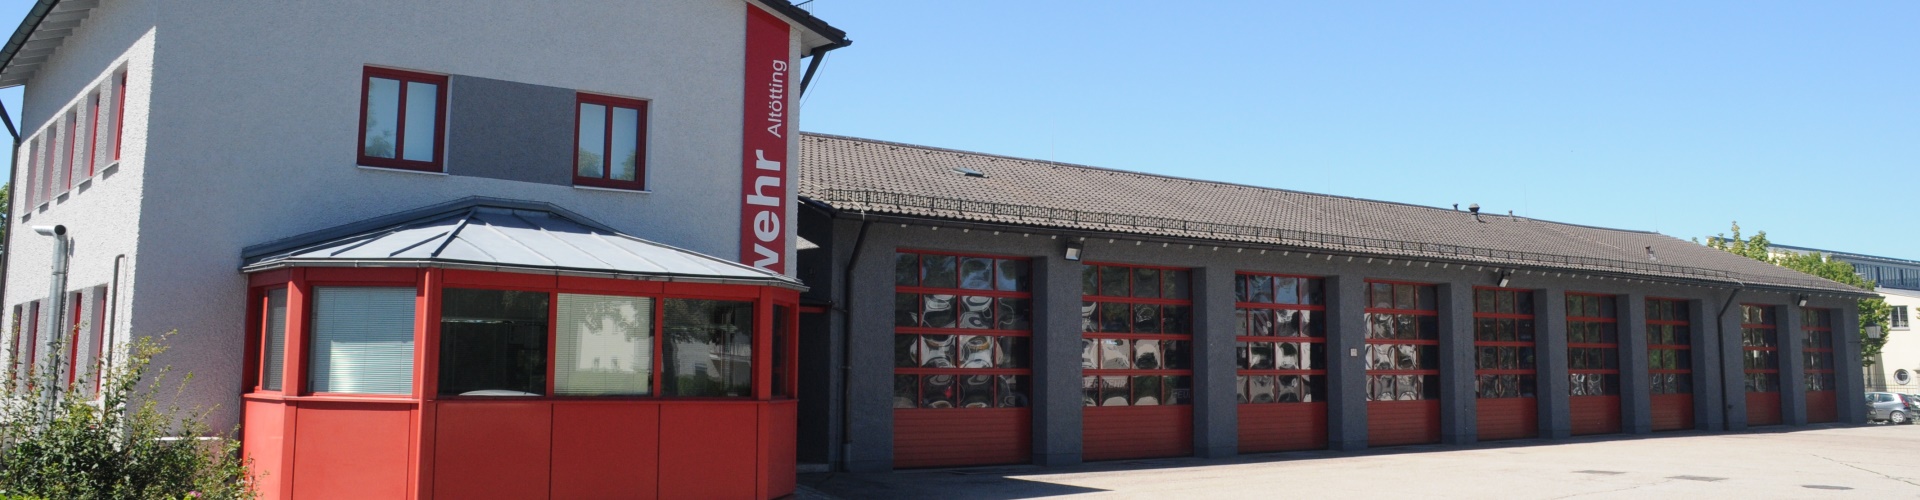 Gebäude der Feuerwehr Altötting mit parkenden Feuerwehrautos in der Garage.